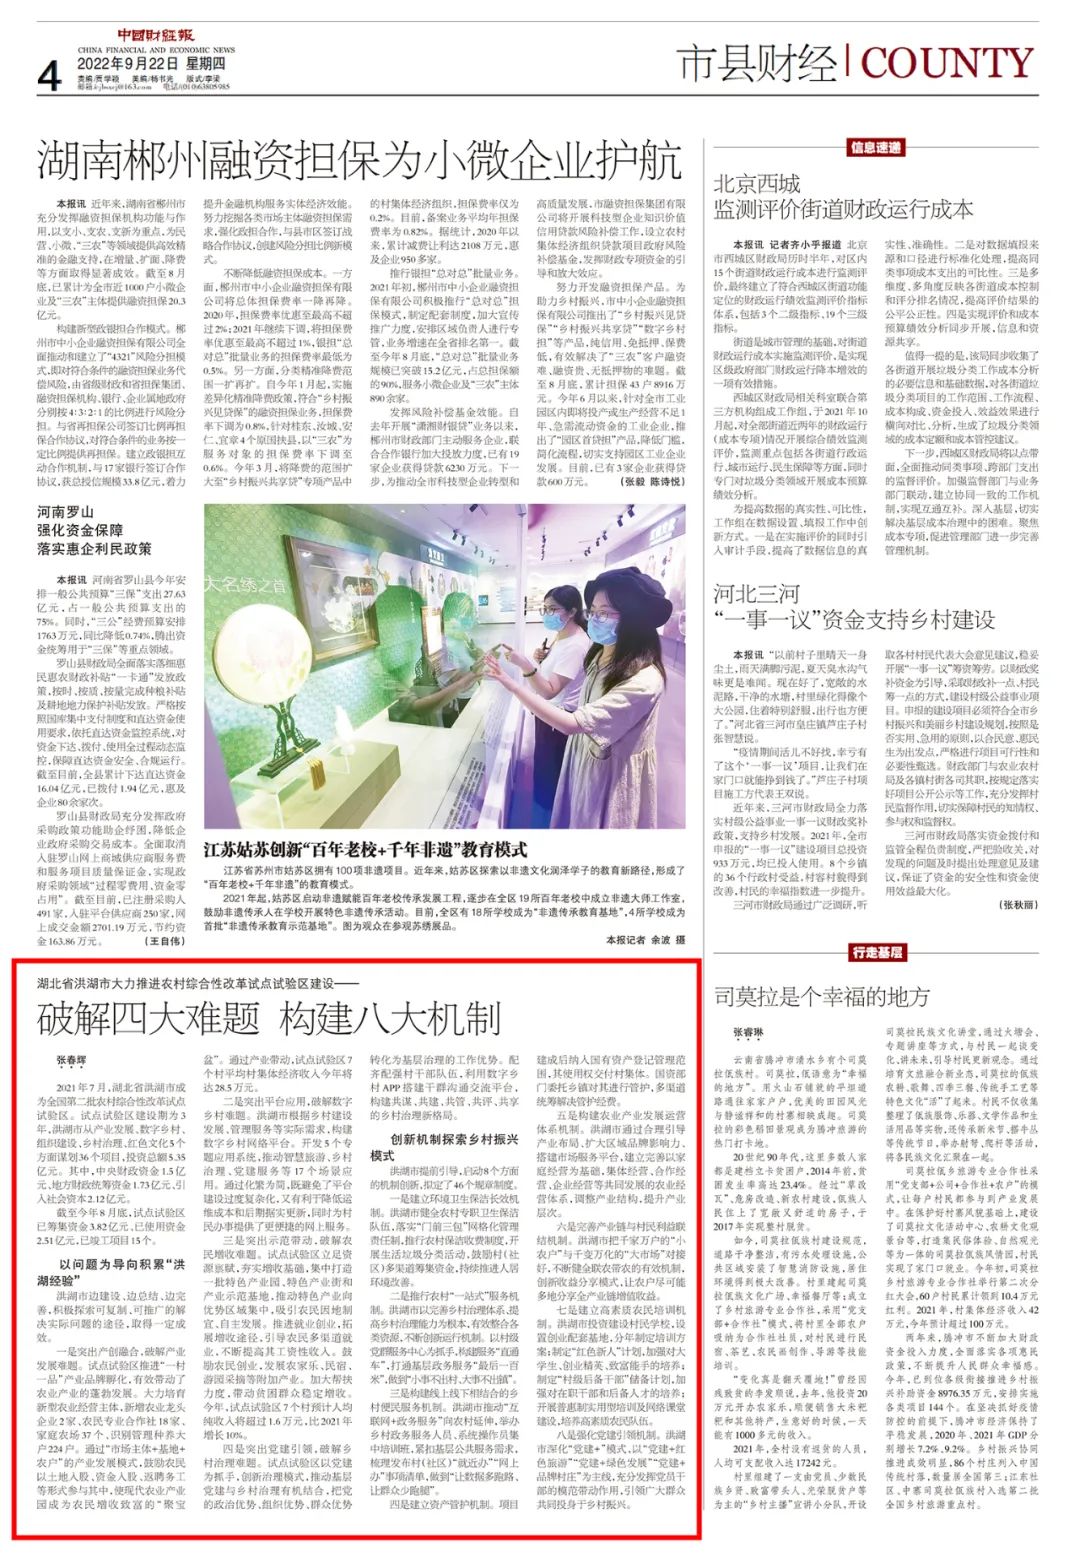 《中国财经报》聚焦洪湖农村综合性改革试点试验区建设成就